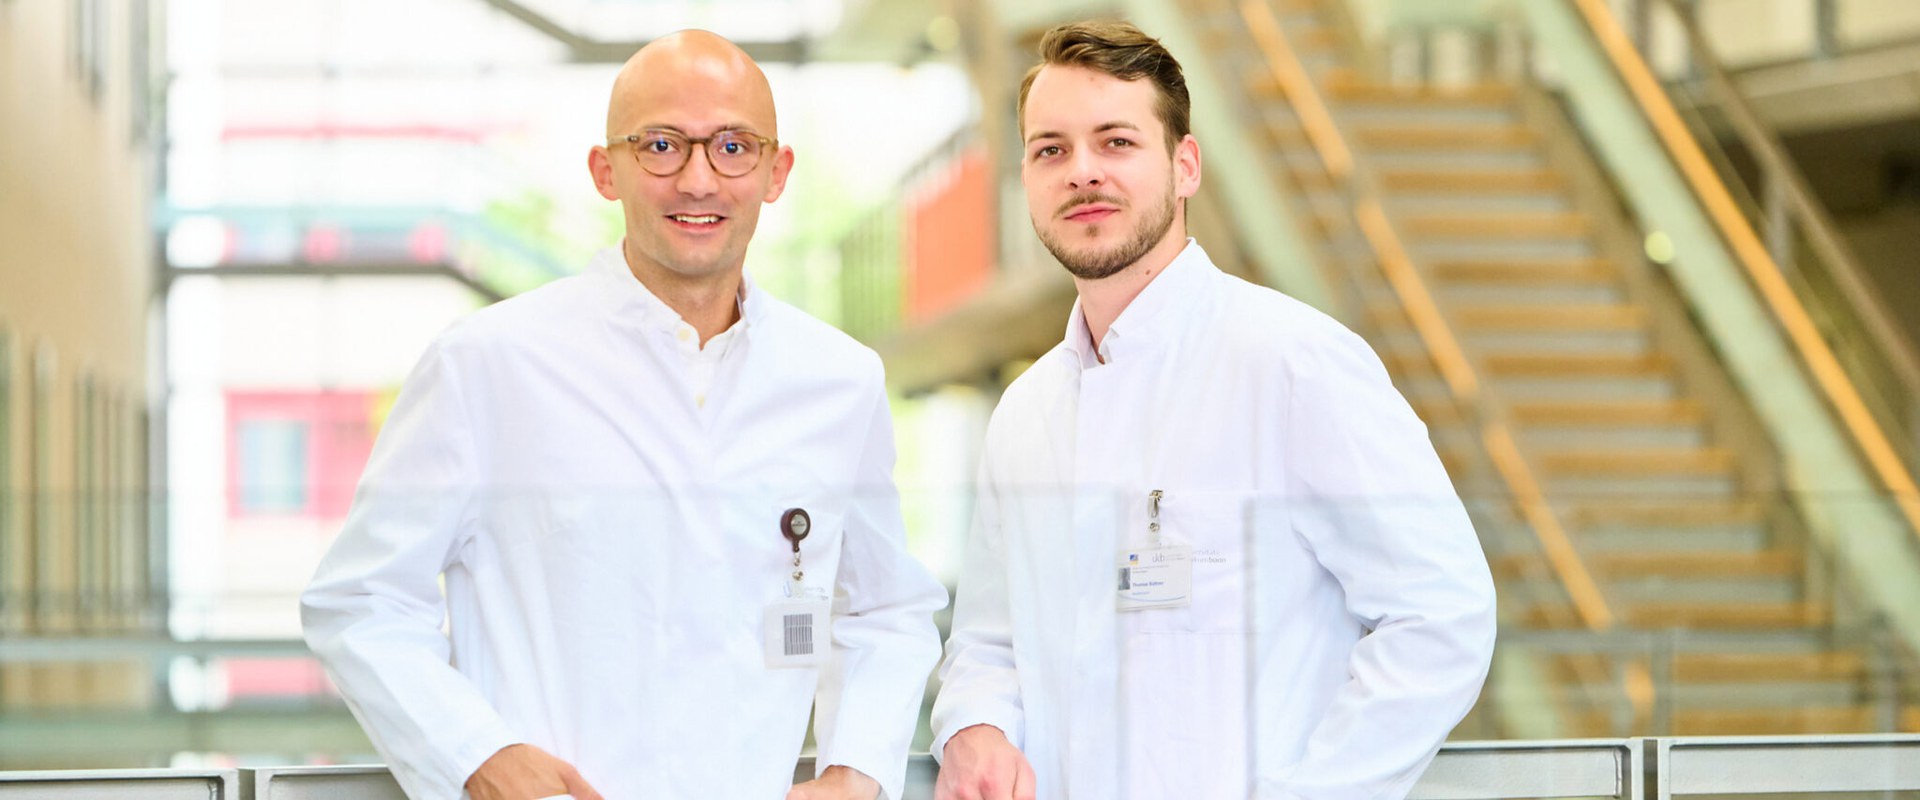 (v. l.) Dr. Richard Weiten und Thomas Büttner, Assistenzärzte der Klinik für Urologie am UKB, wurden von der NRW Gesellschaft für Urologie e. V. für ihre neuen Erkenntnisse in der Tumorforschung ausgezeichnet.